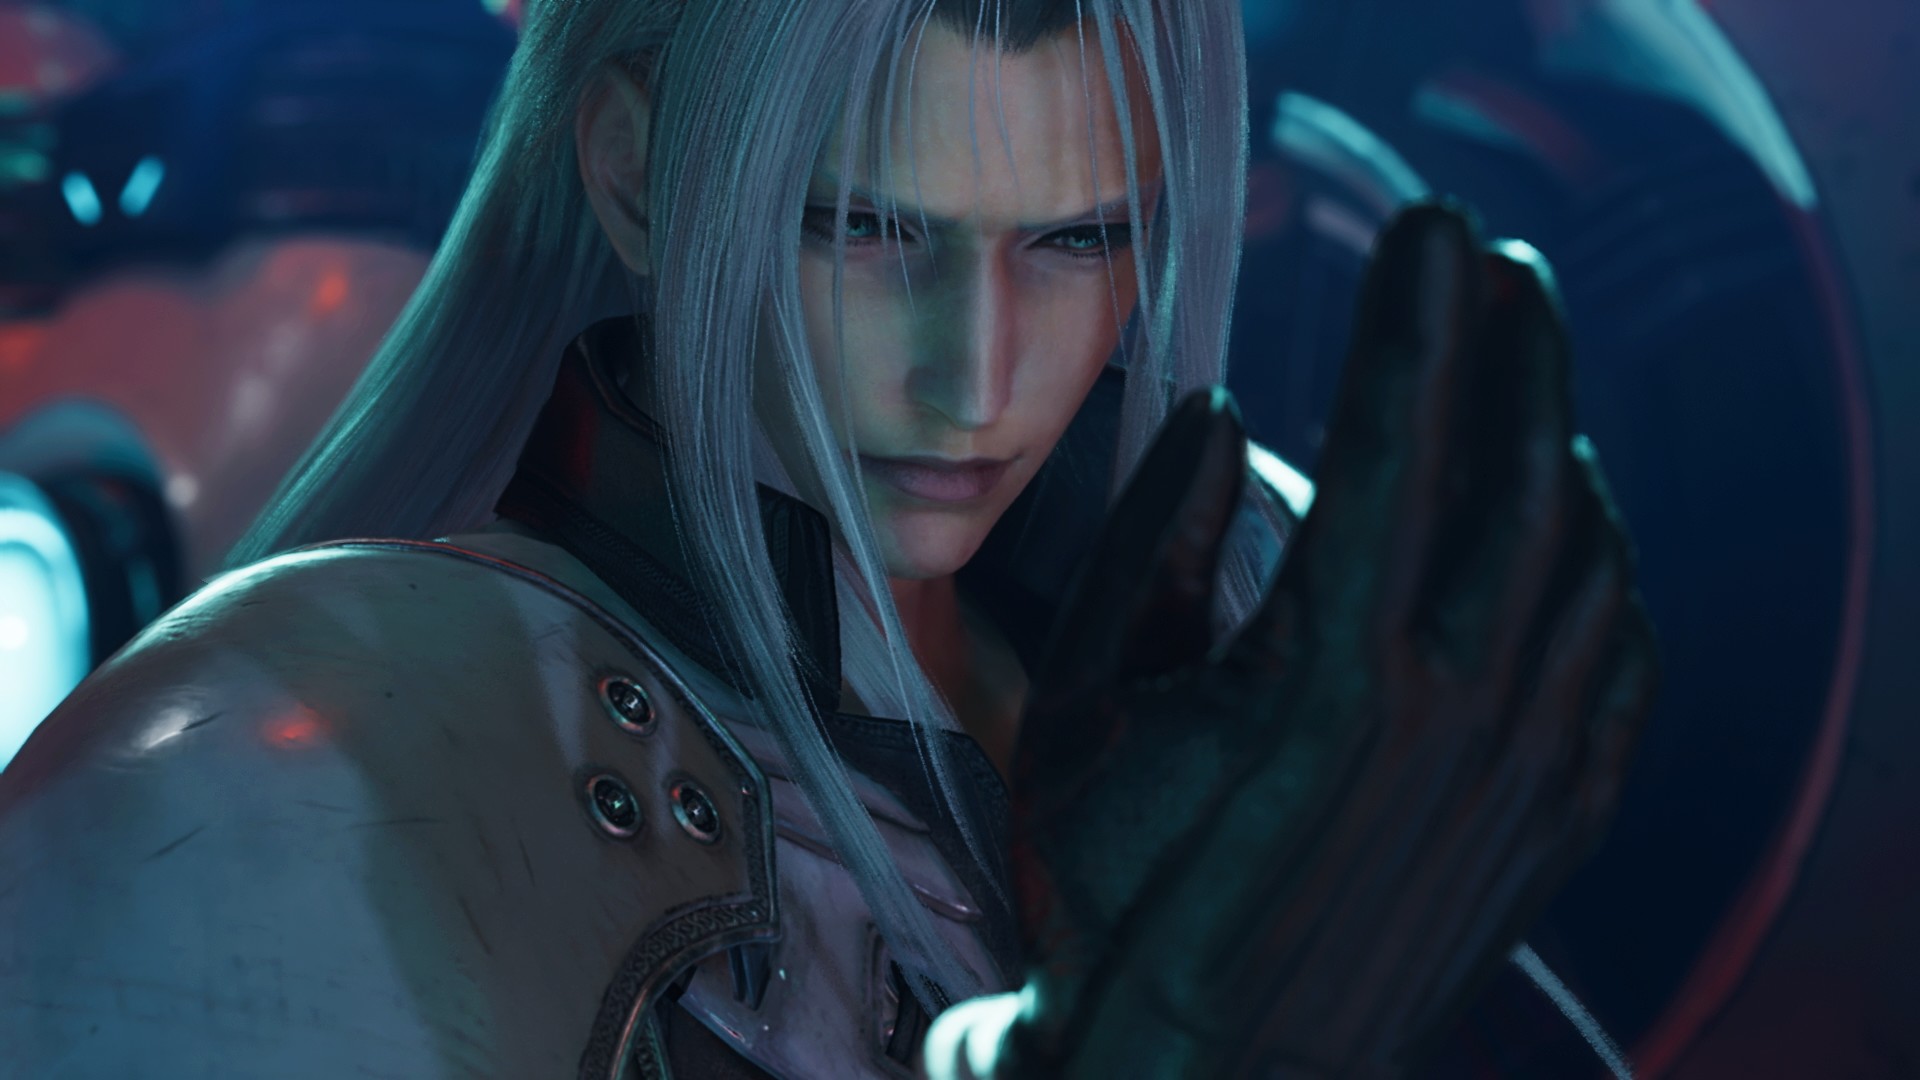 Sephiroth di Final Fantasy 7 Rebirth che si guarda la mano in contemplazione